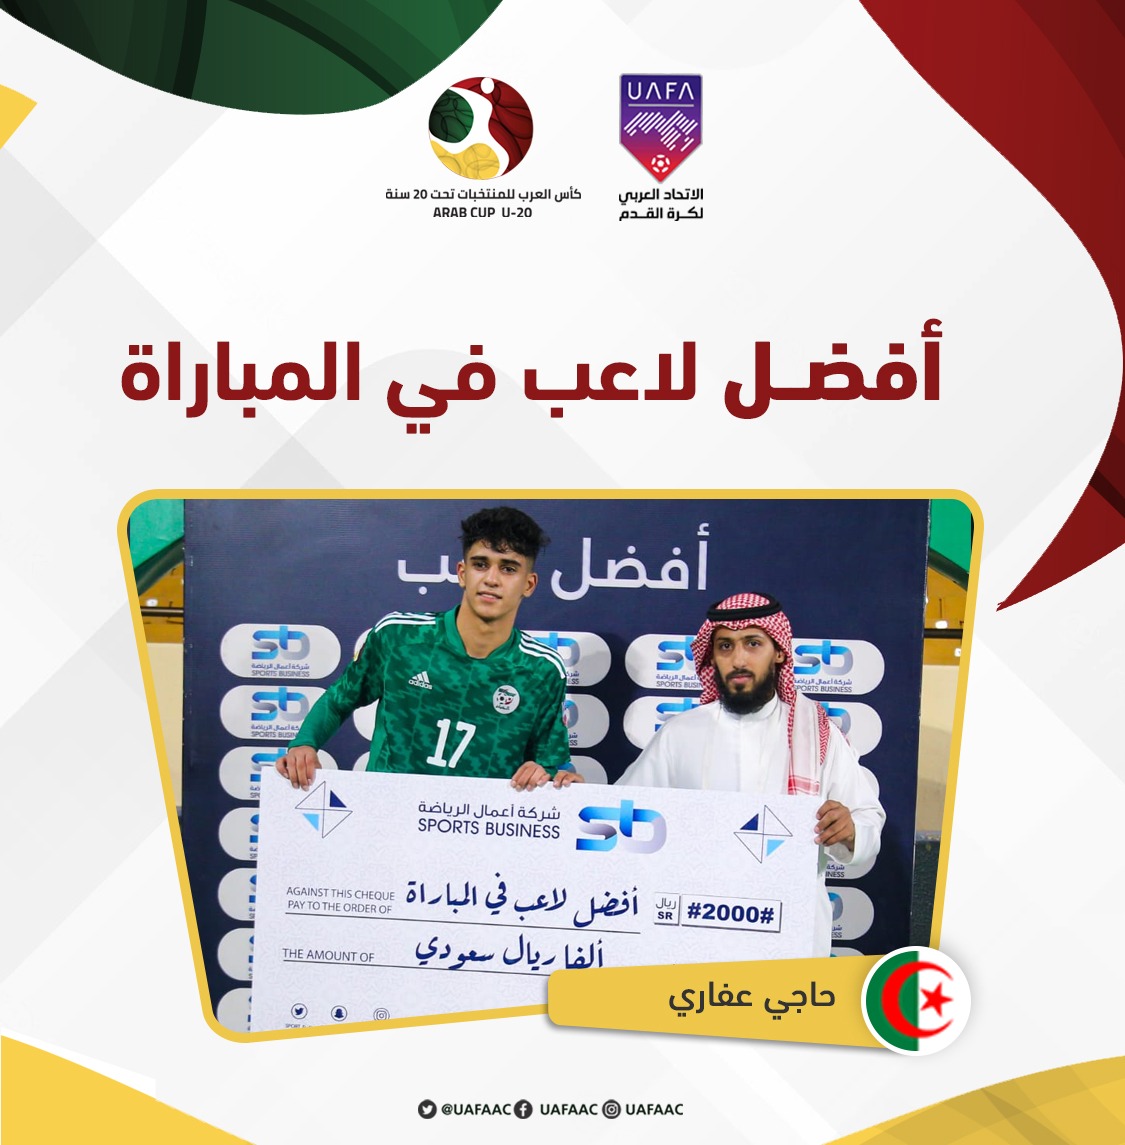 اللاعب الجزائري حاجي عفاري جائزة أفضل لاعب في المباراة FZBXXekXgAAmhOC?format=jpg